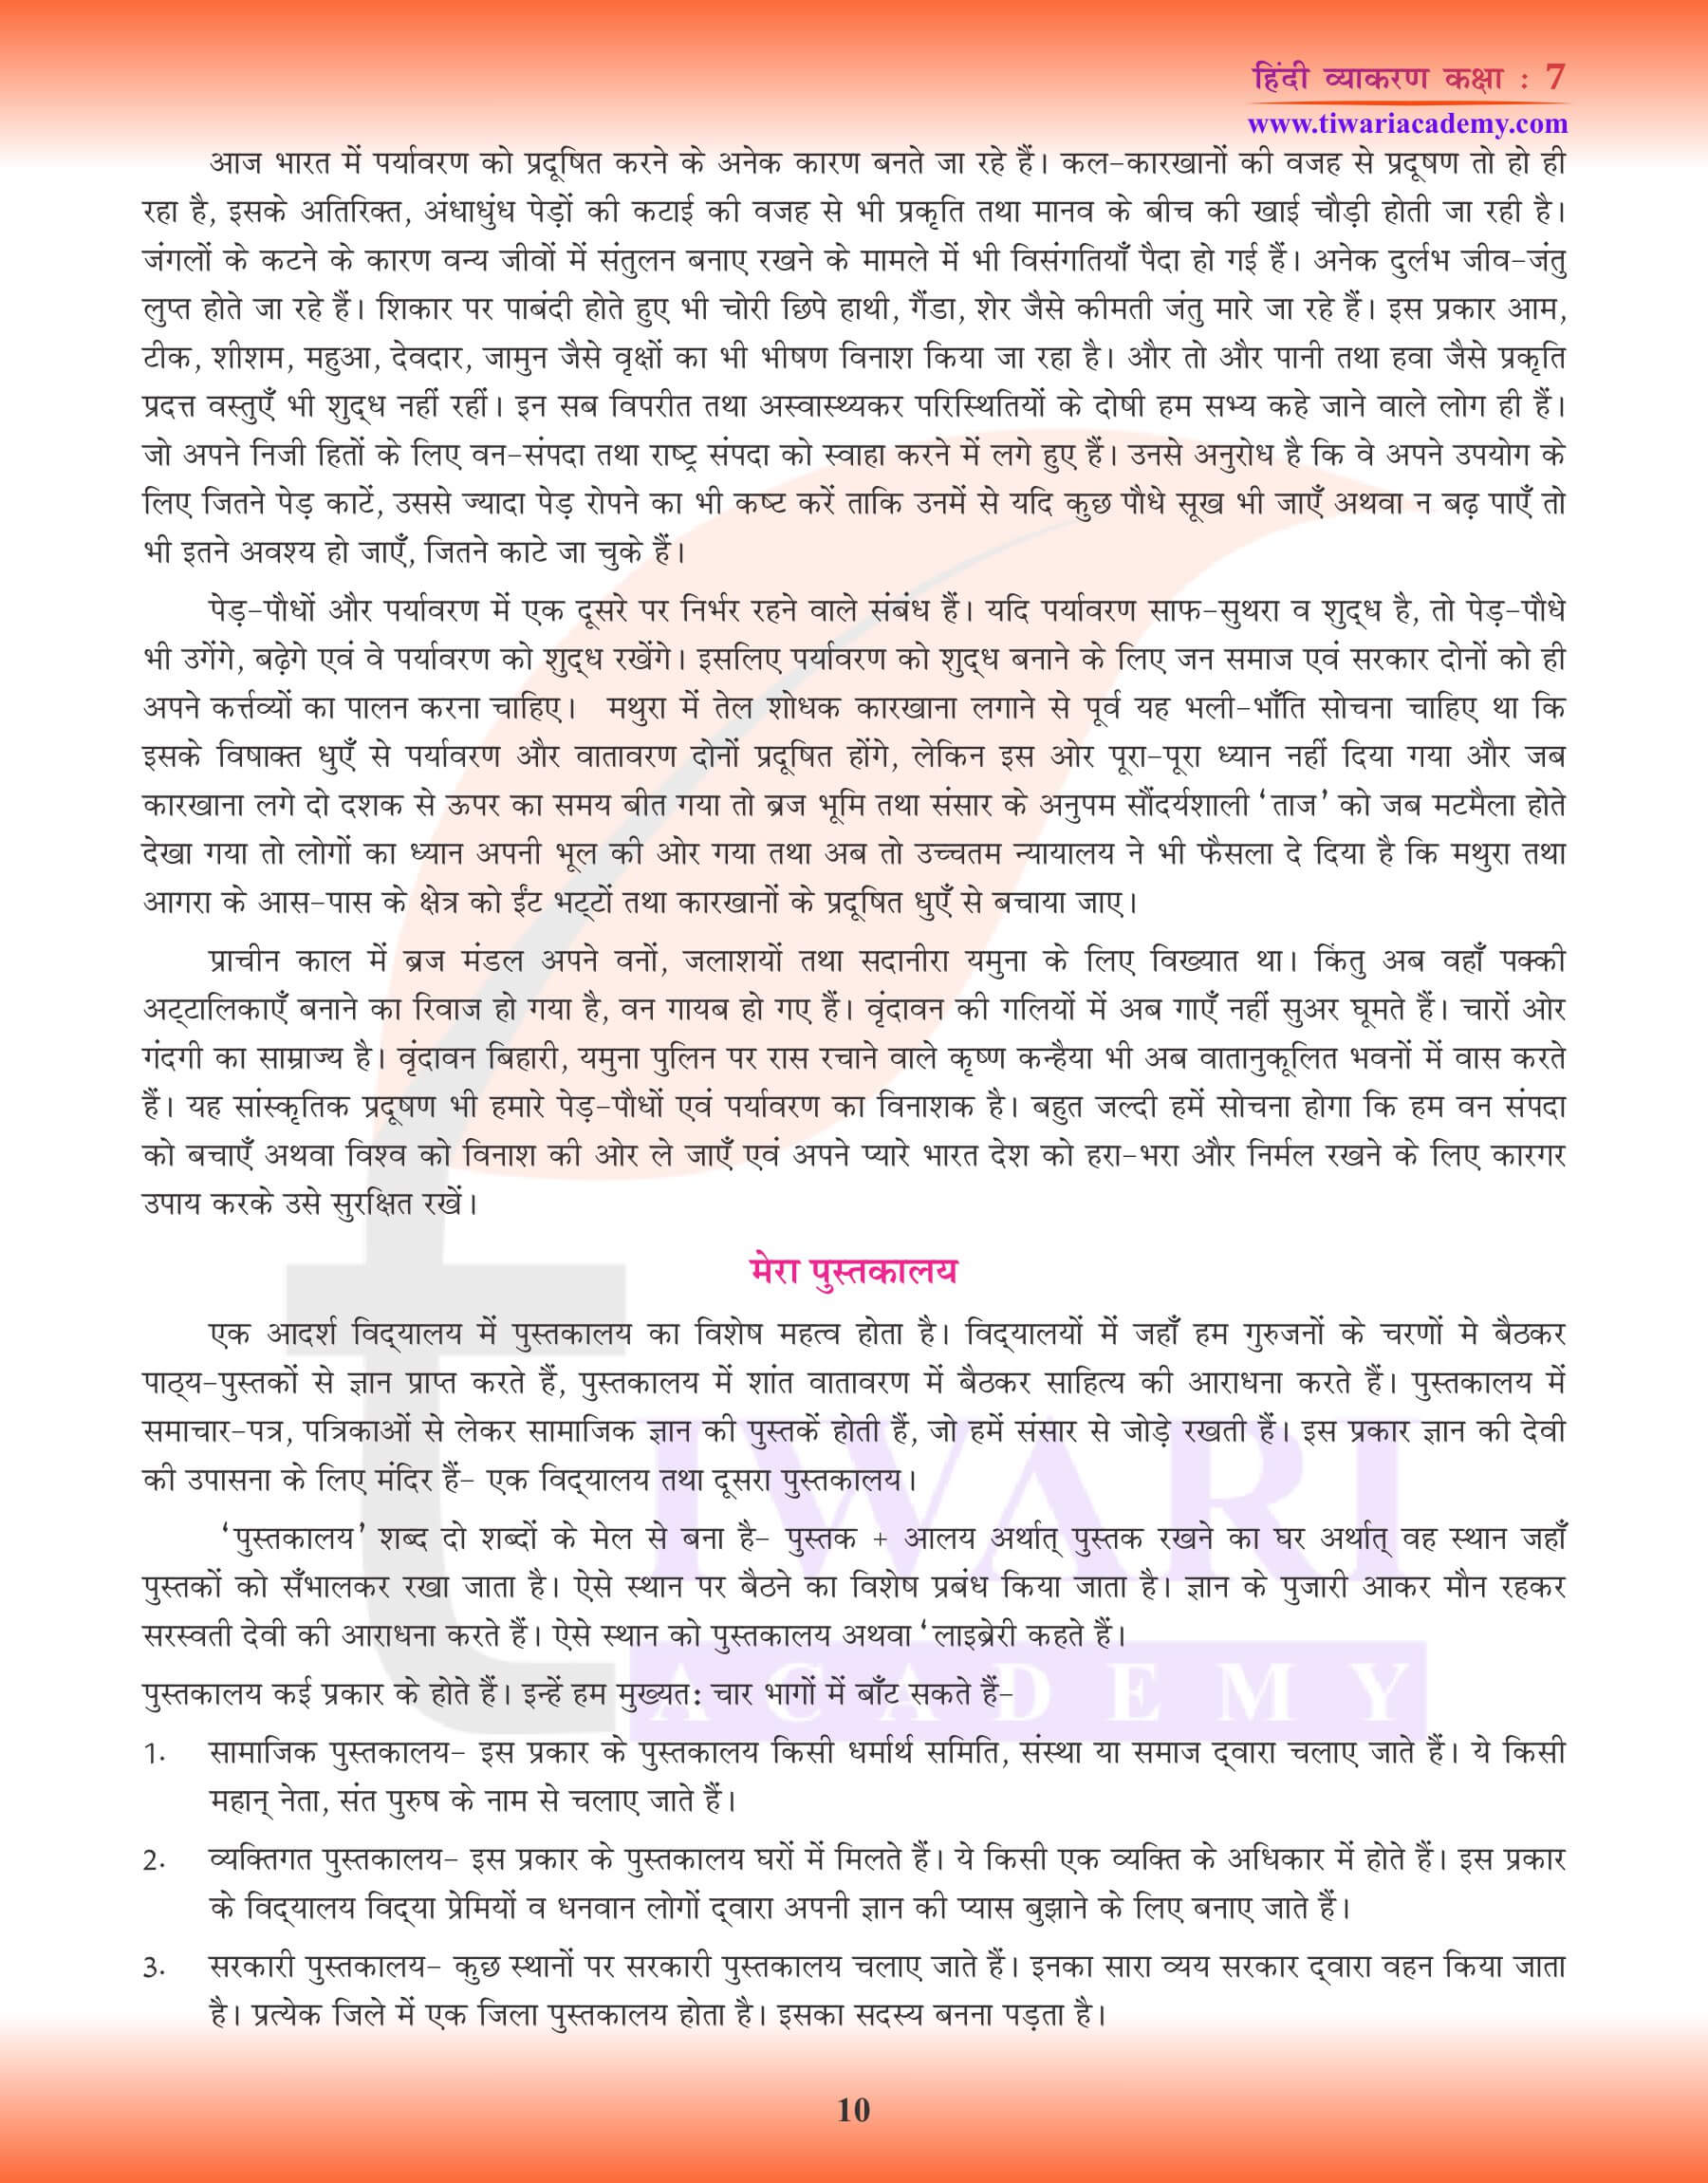 कक्षा 7 हिंदी व्याकरण में निबंध लेखन के उत्तर